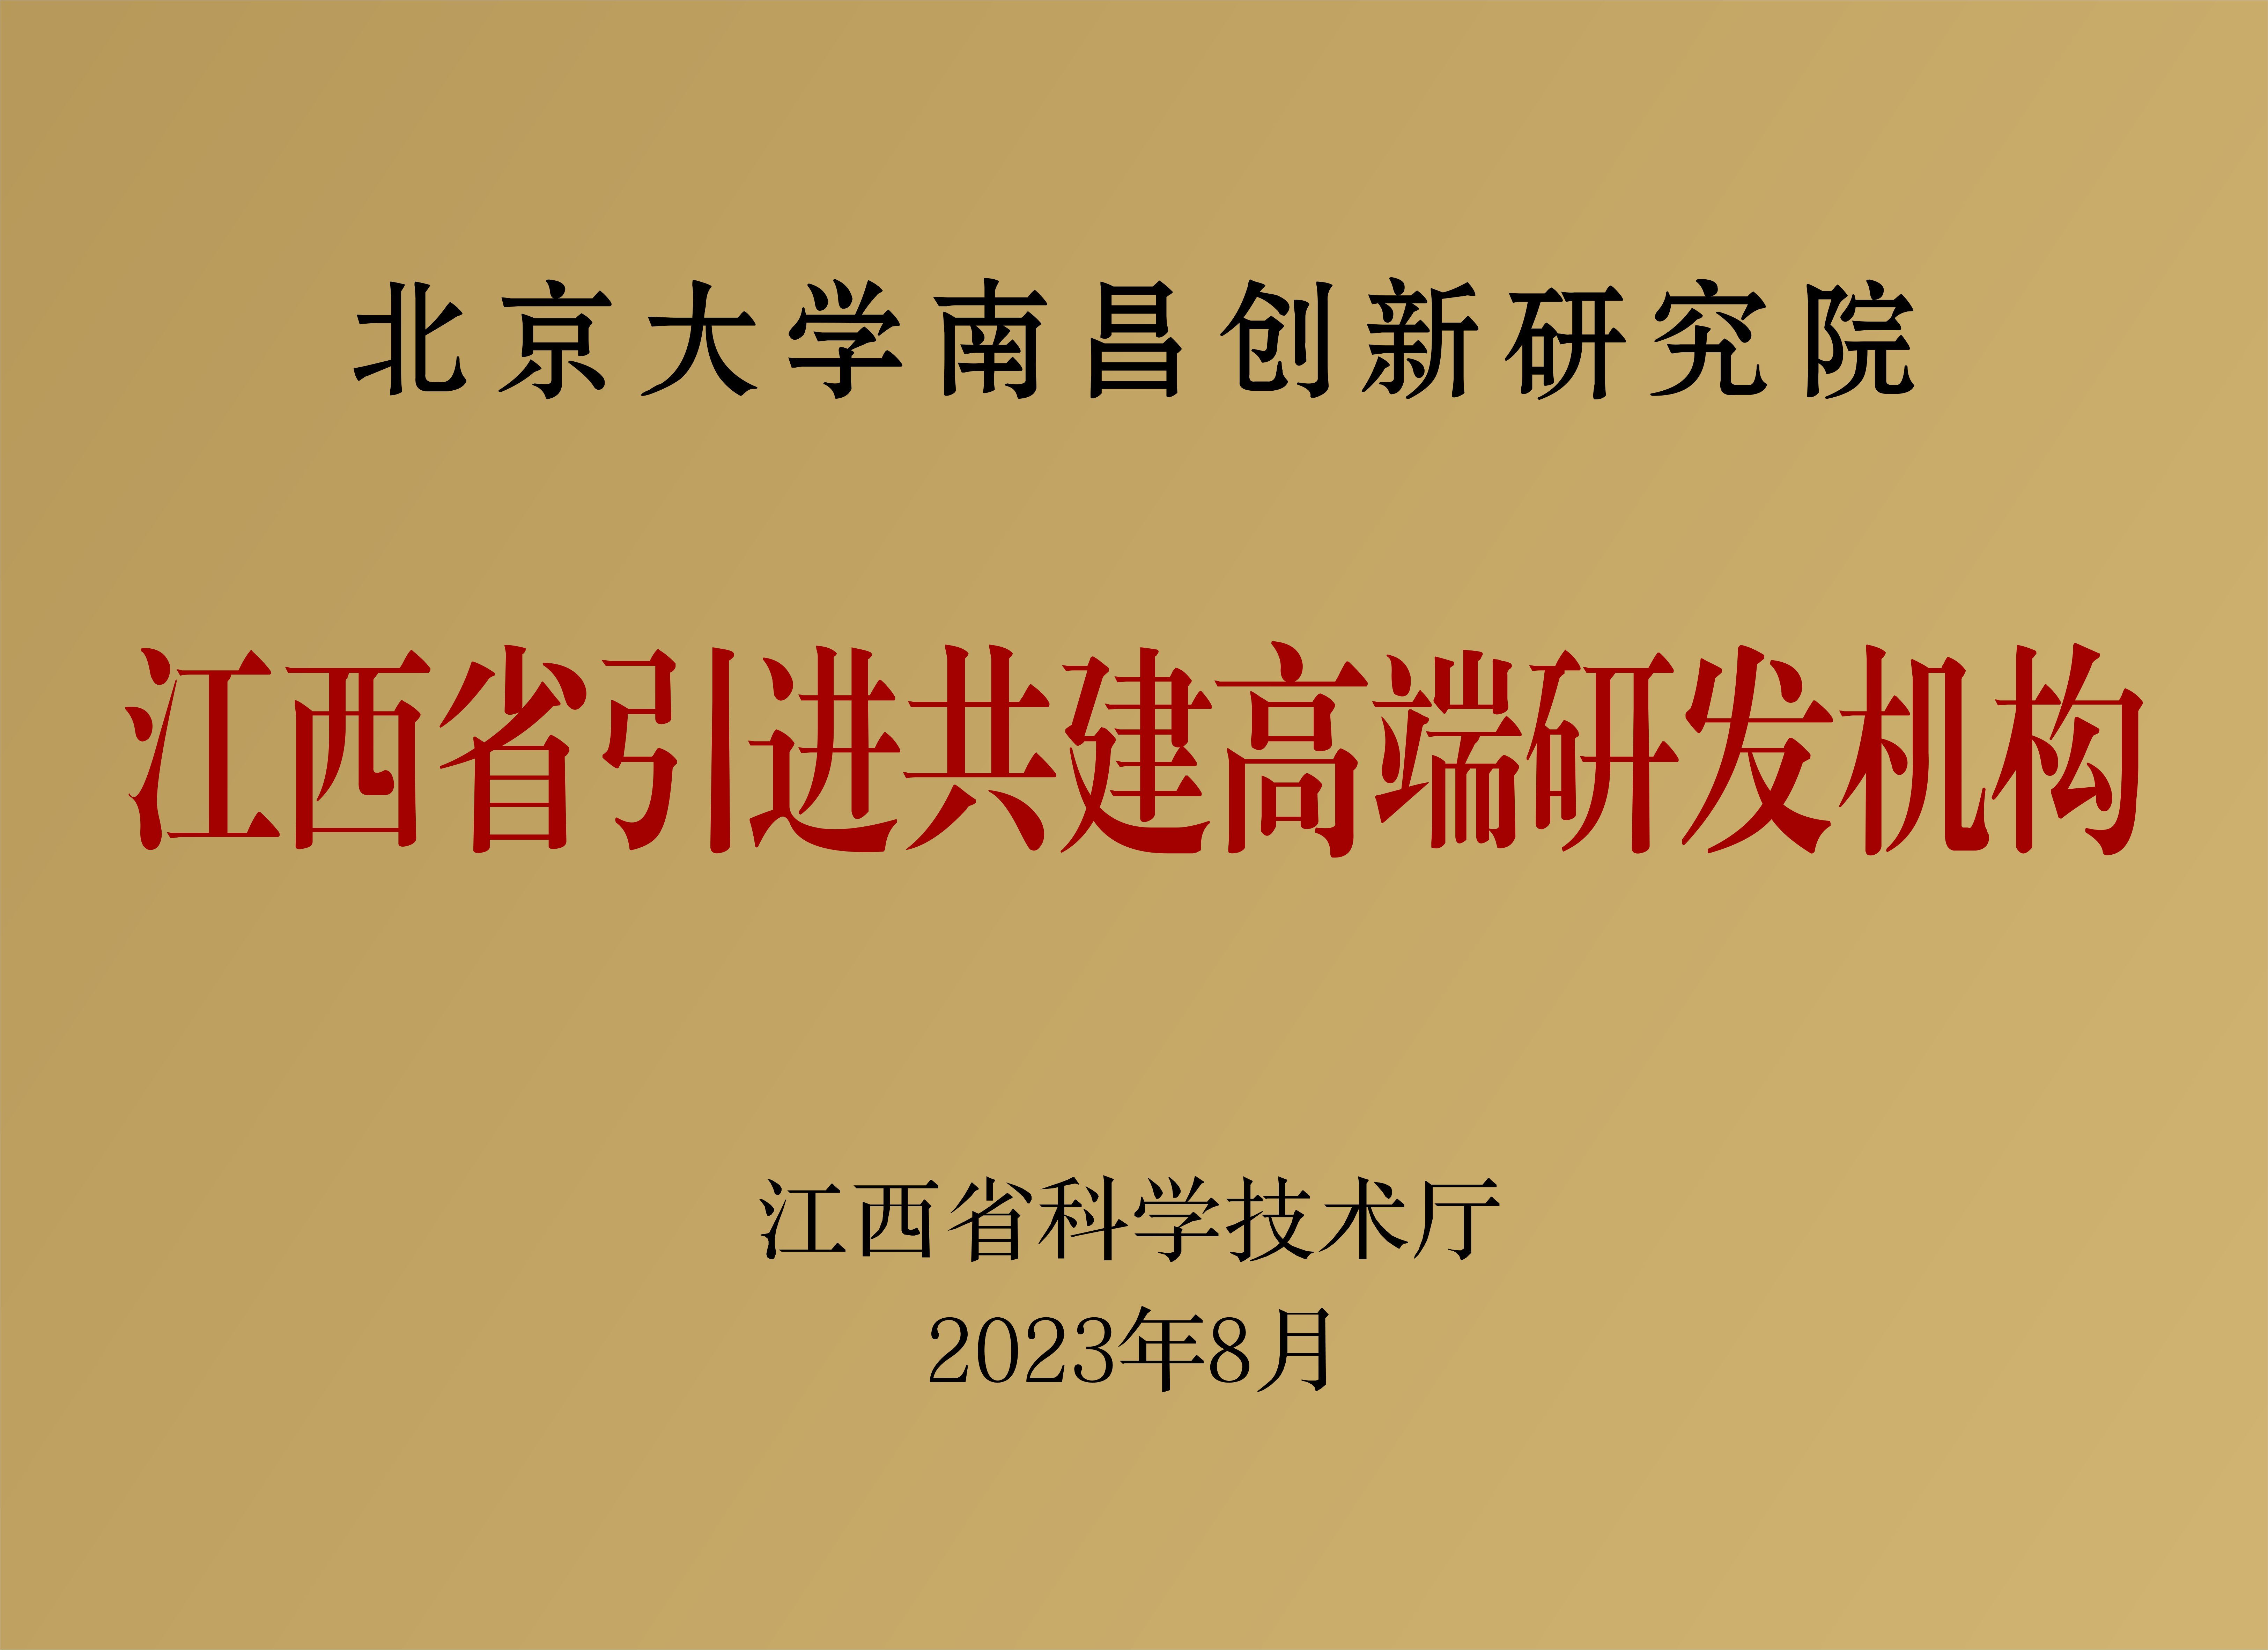 2023年8月，北京大学南昌创新研究院获批江西省引进共建高端研发机构